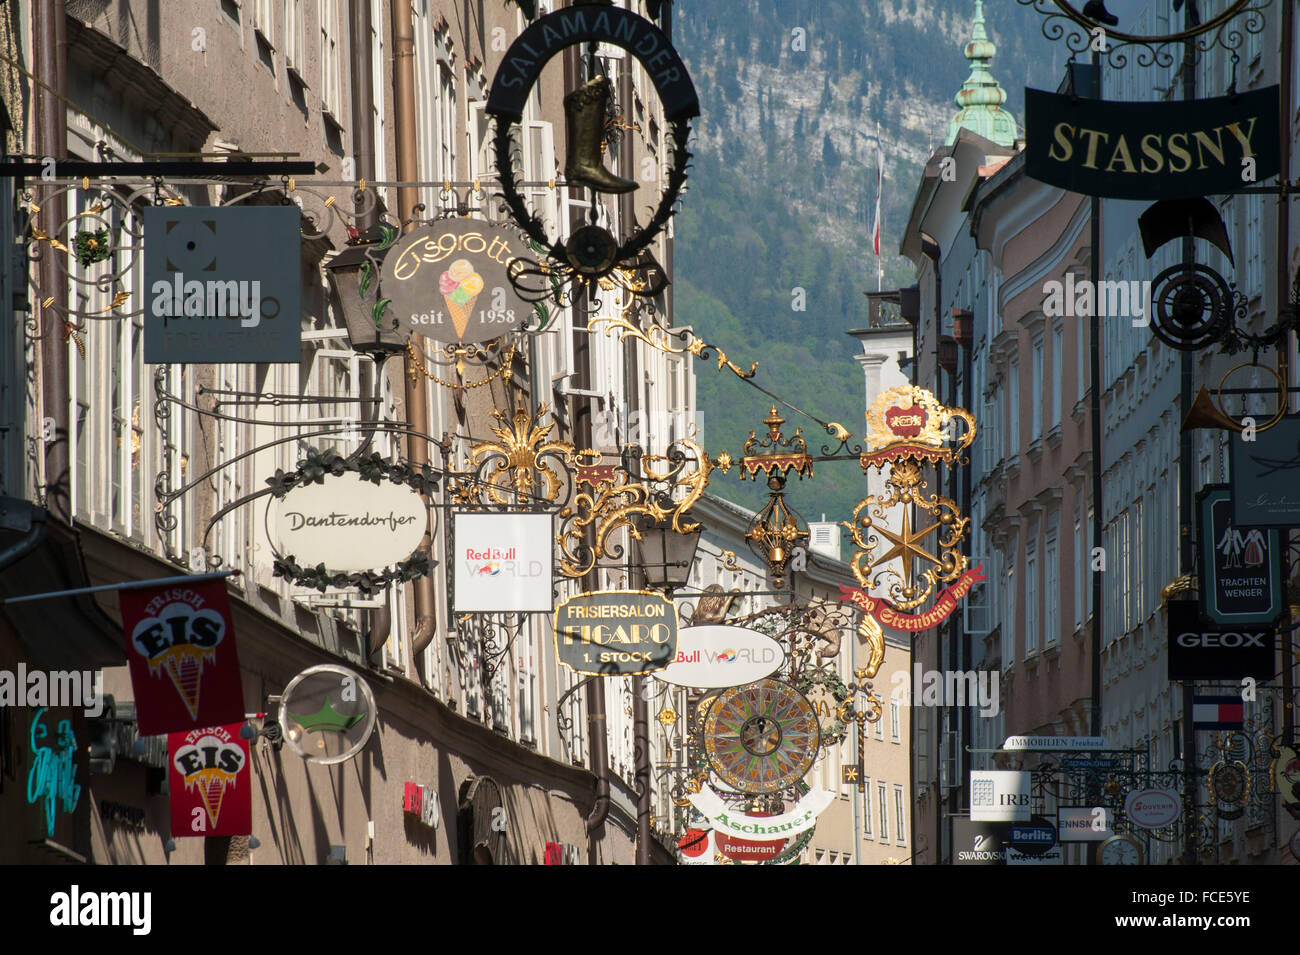 La Getreidegasse, le centre historique de la ville de Salzbourg, site du patrimoine mondial de l'UNESCO, Autriche Banque D'Images